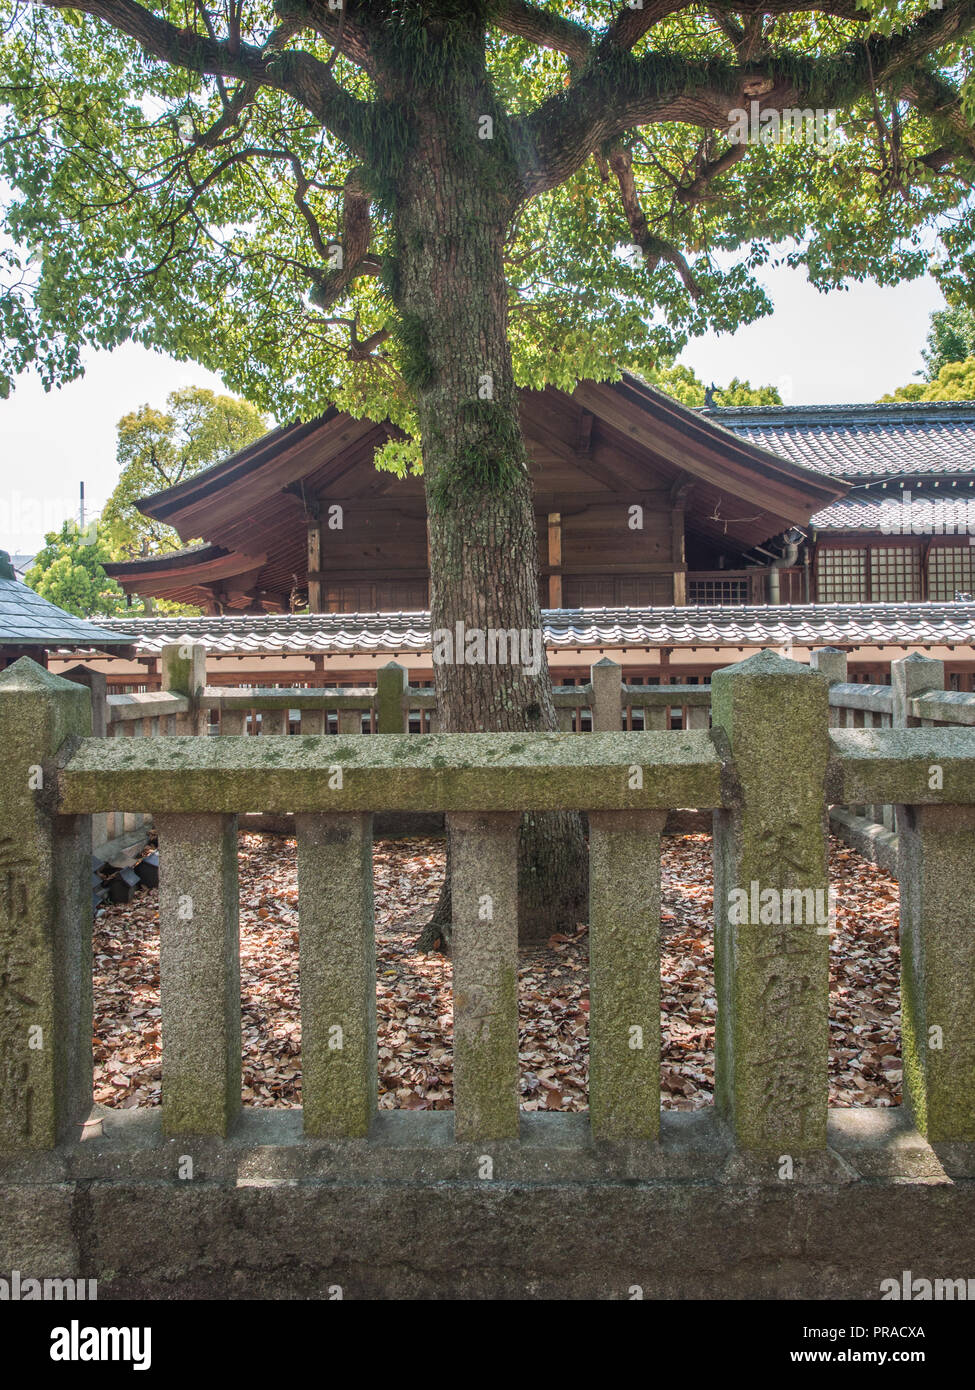 Sacred tree protected by stone fence enclosure, Oyamazumi shrine, Imabari, Ehime, Shikoku, Japan Stock Photo